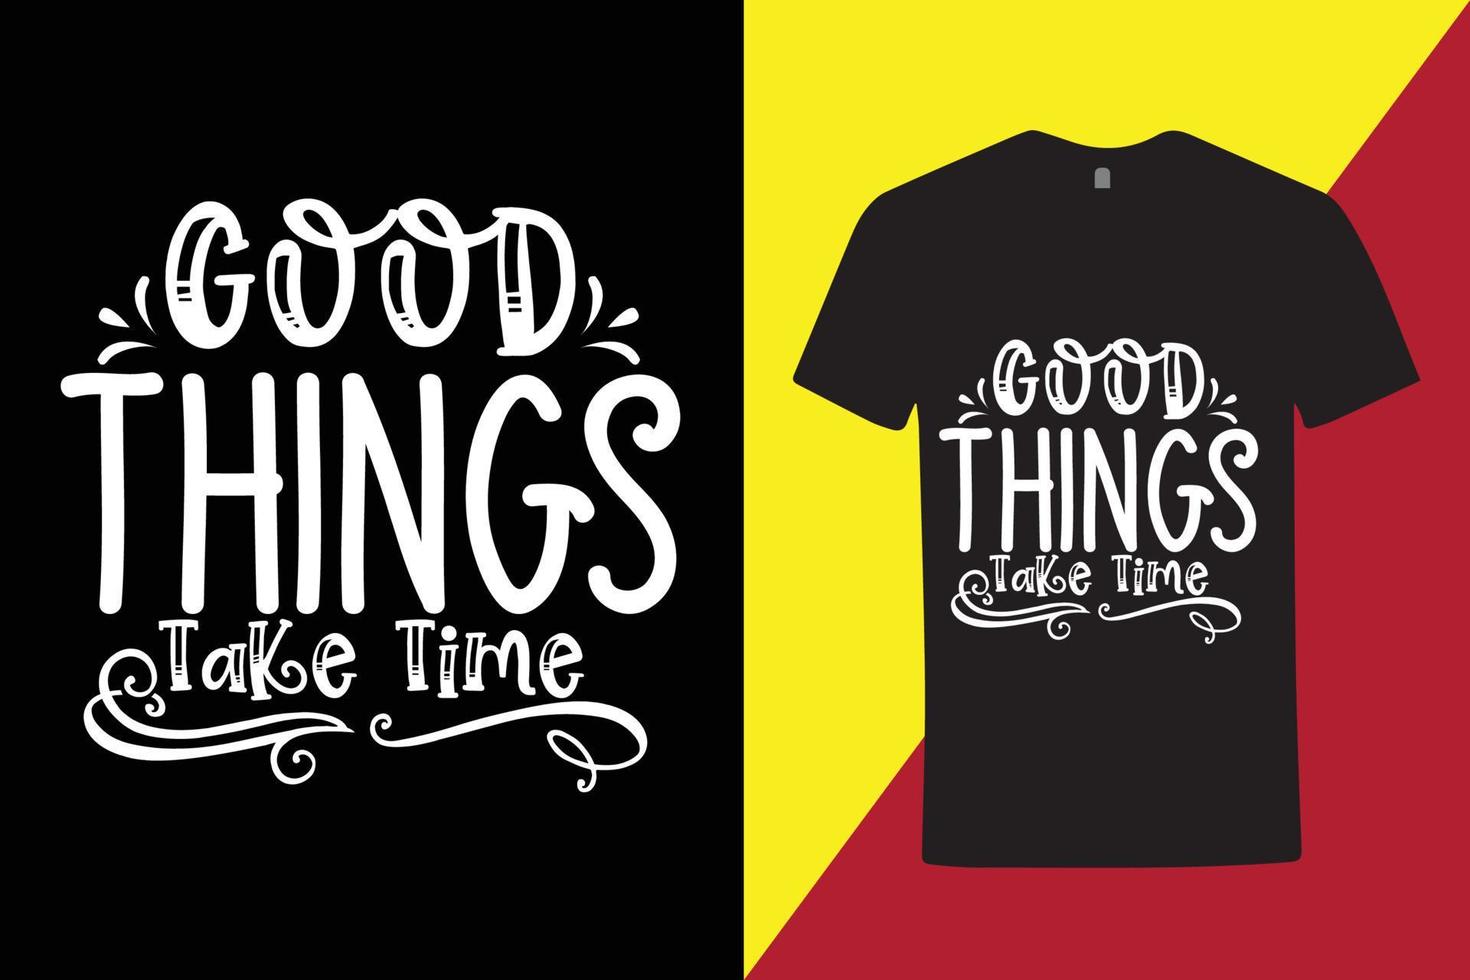 kreatives T-Shirt mit motivierendem und inspirierendem Zitat, cooles Typografie-T-Shirt vektor